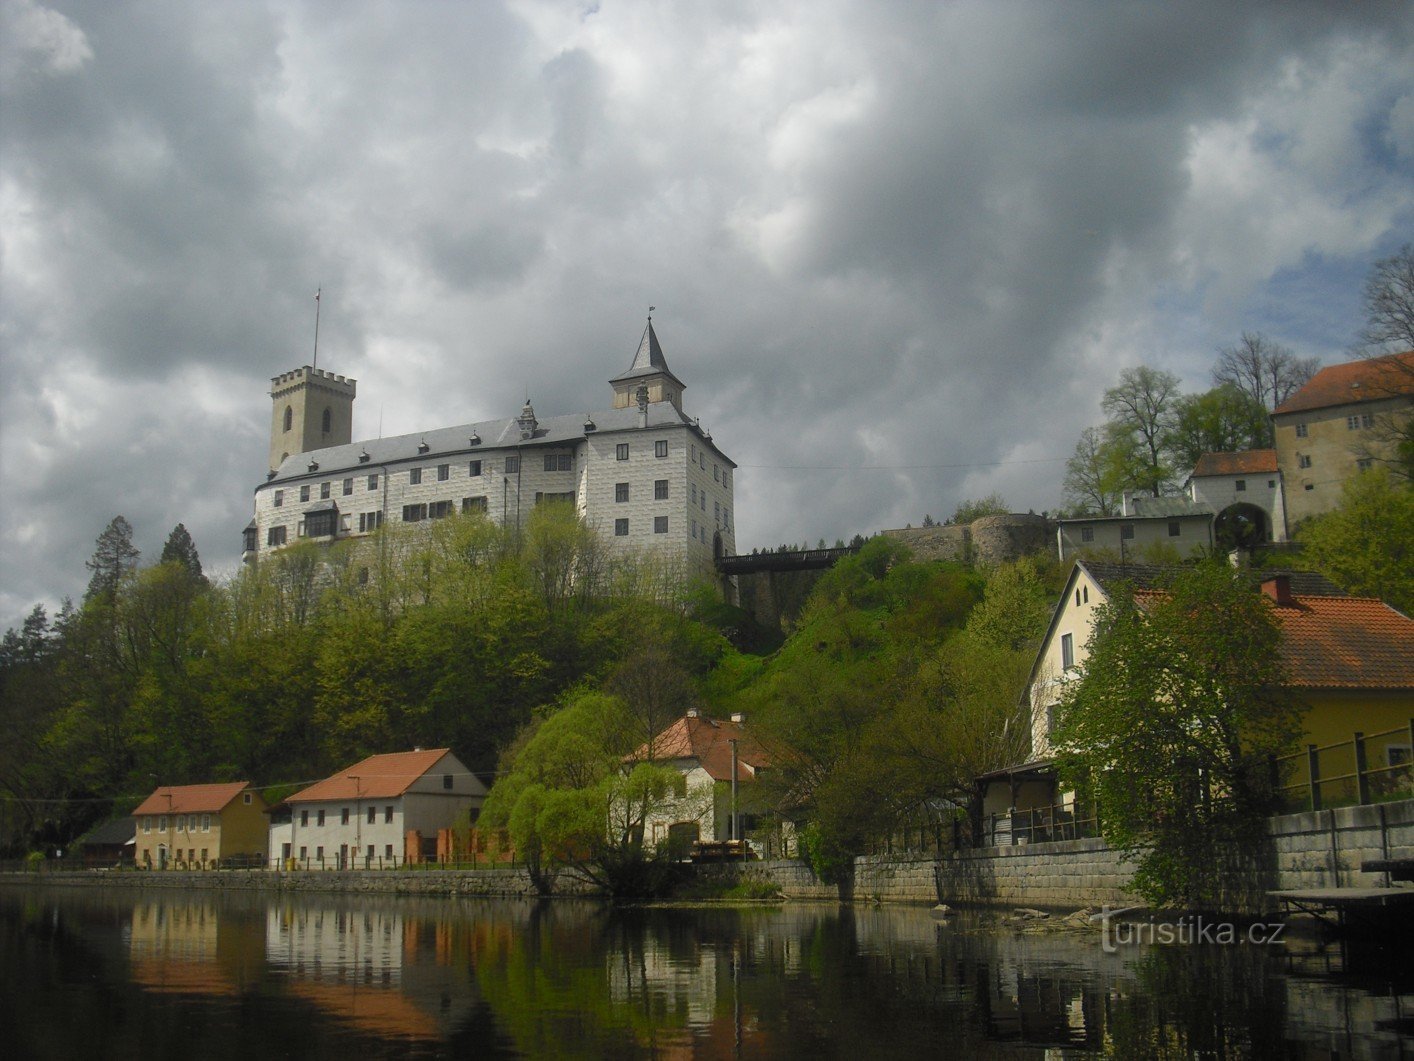 Rožmberk i jedan od najstarijih dvoraca obitelji Vítkov